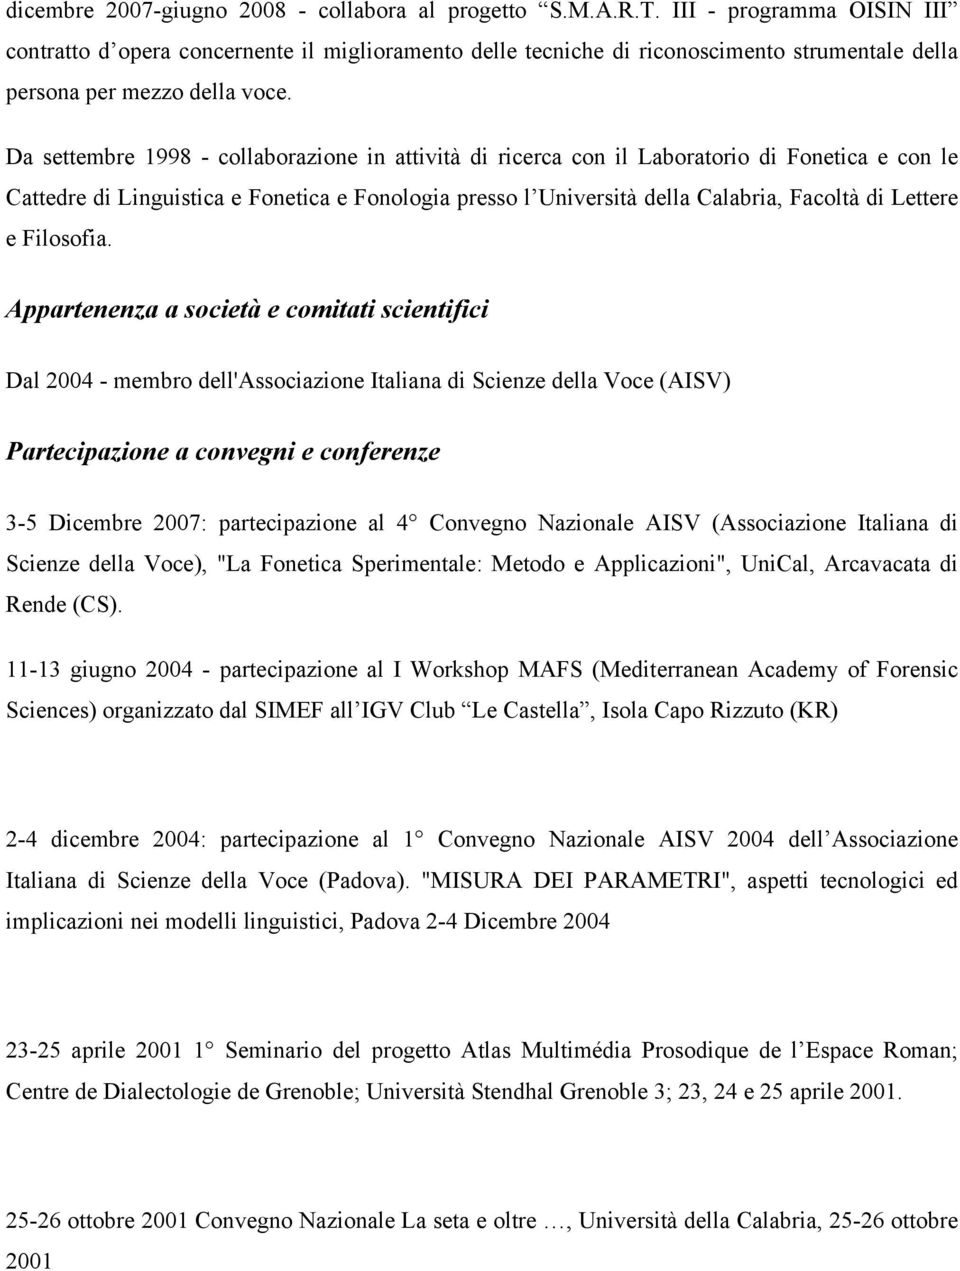 Da settembre 1998 - collaborazione in attività di ricerca con il Laboratorio di Fonetica e con le Cattedre di Linguistica e Fonetica e Fonologia presso l Università della Calabria, Facoltà di Lettere